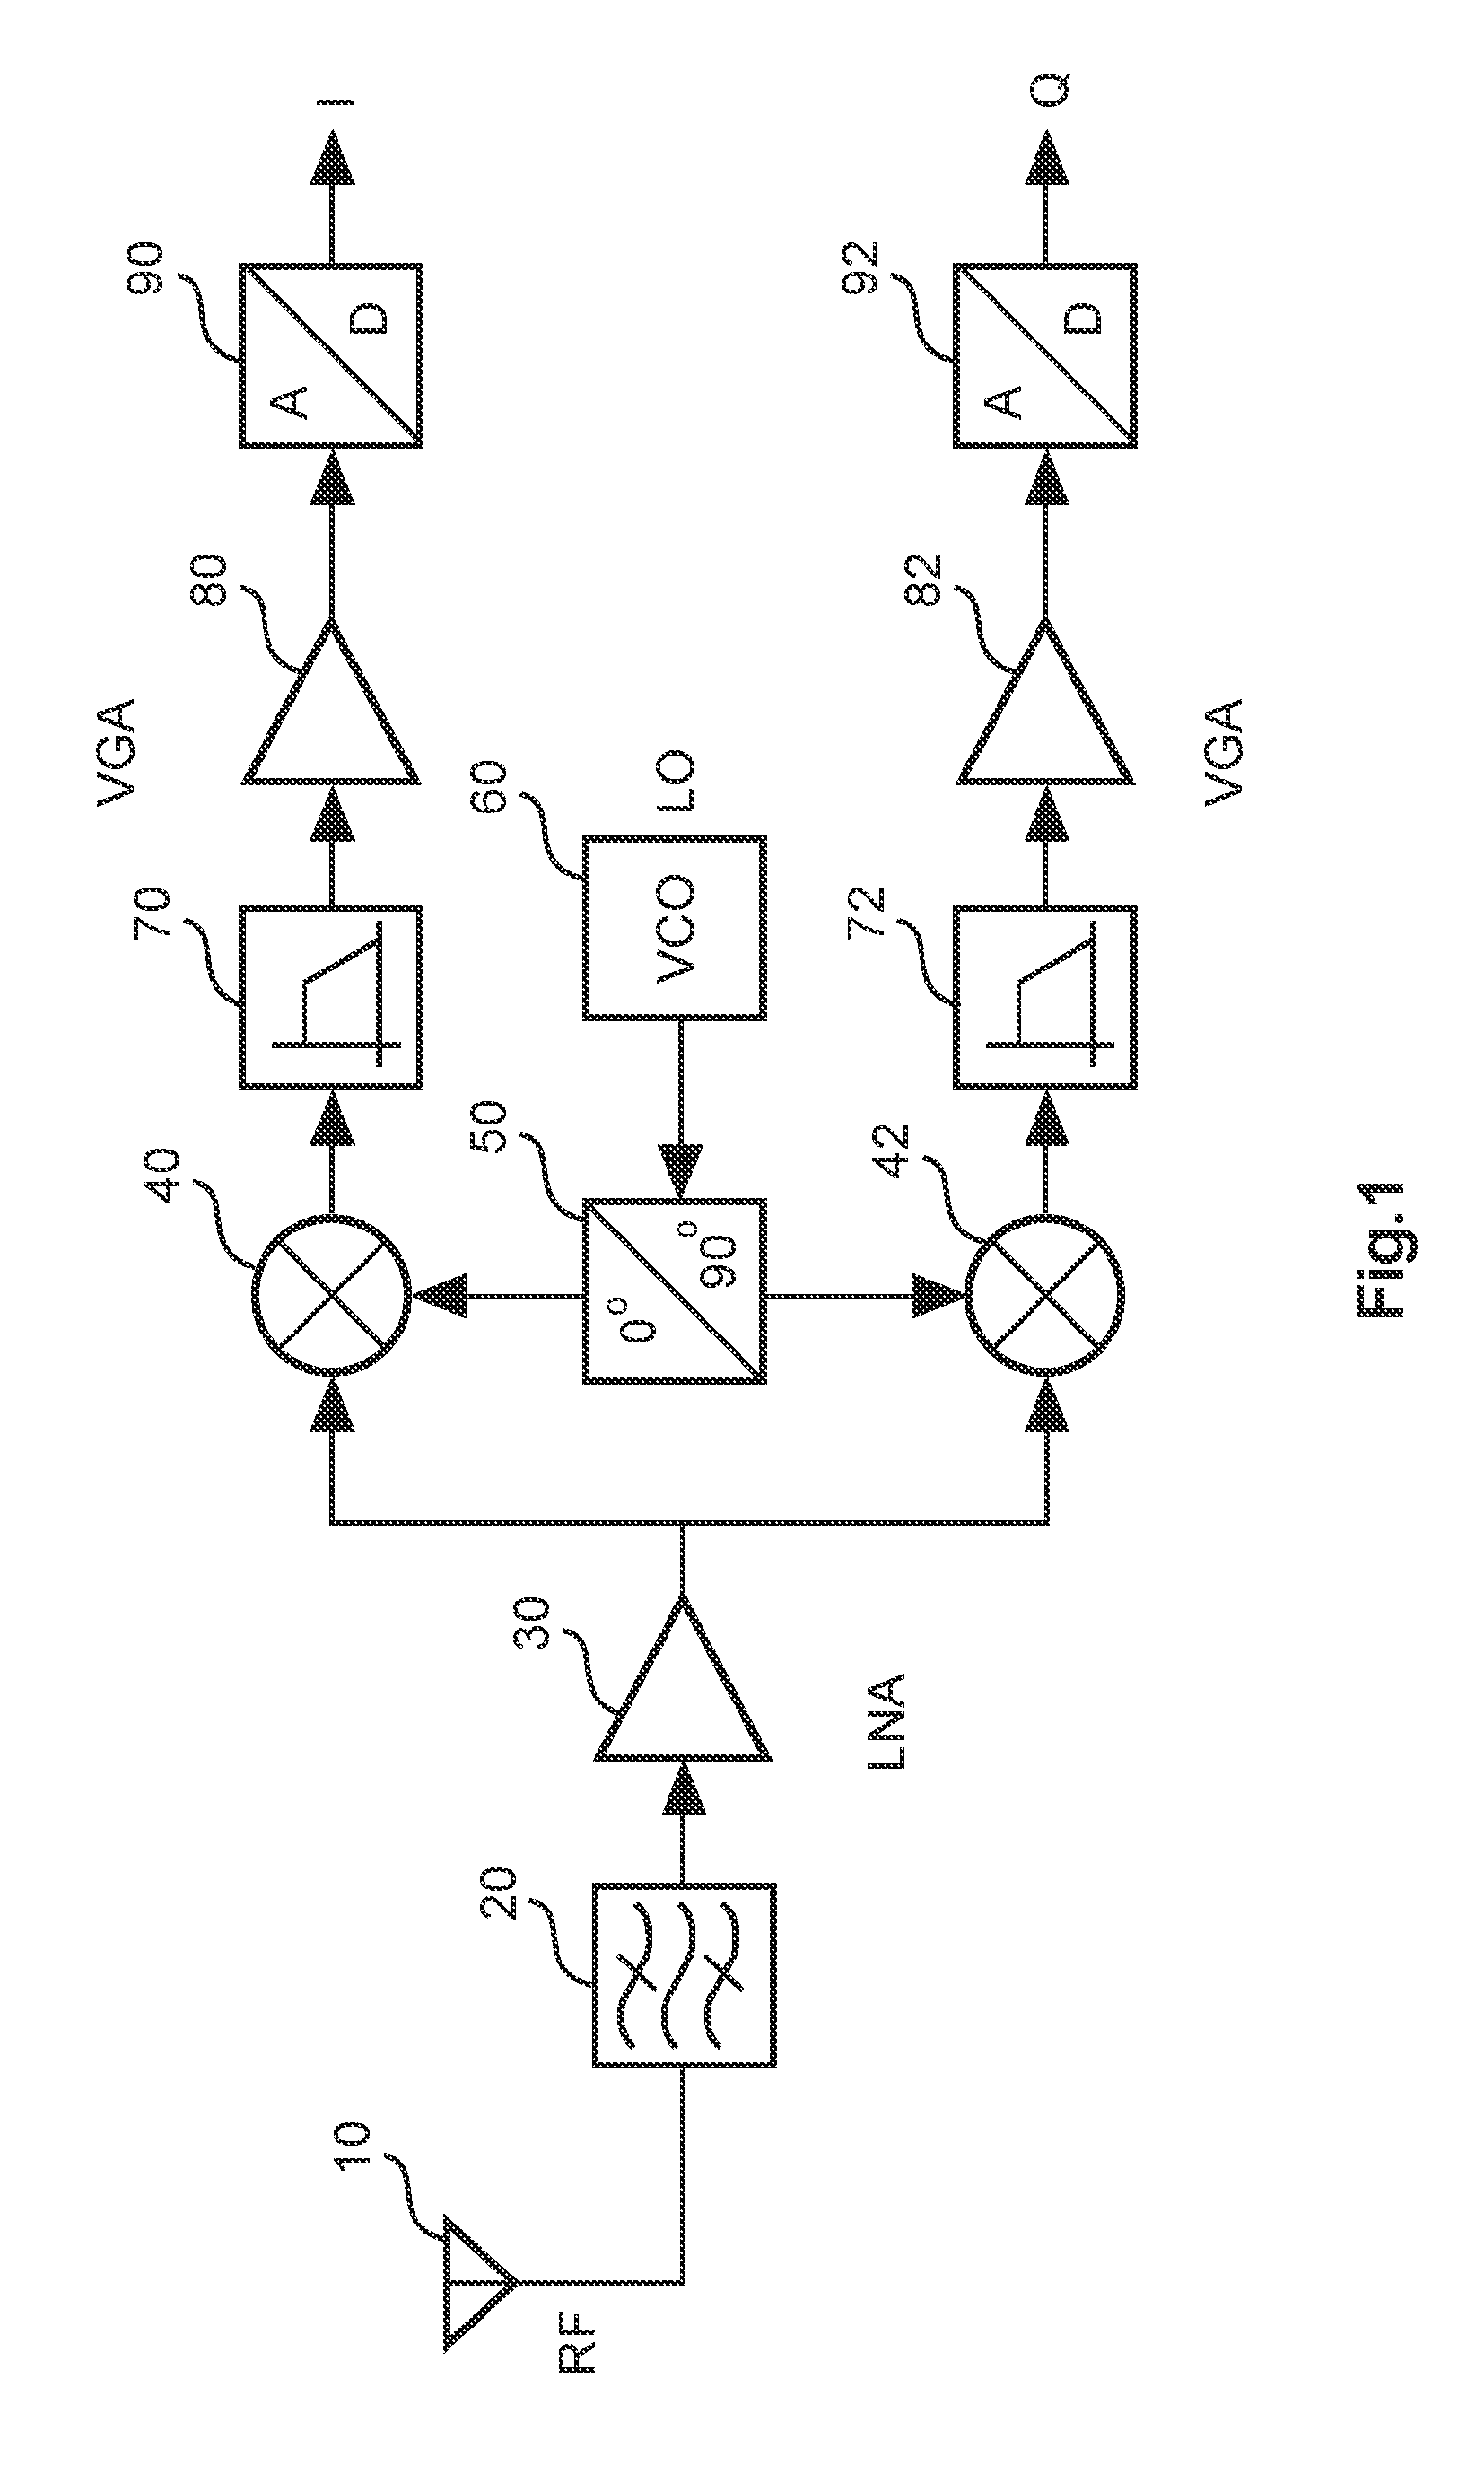 Dual-mode mixer circuit and method